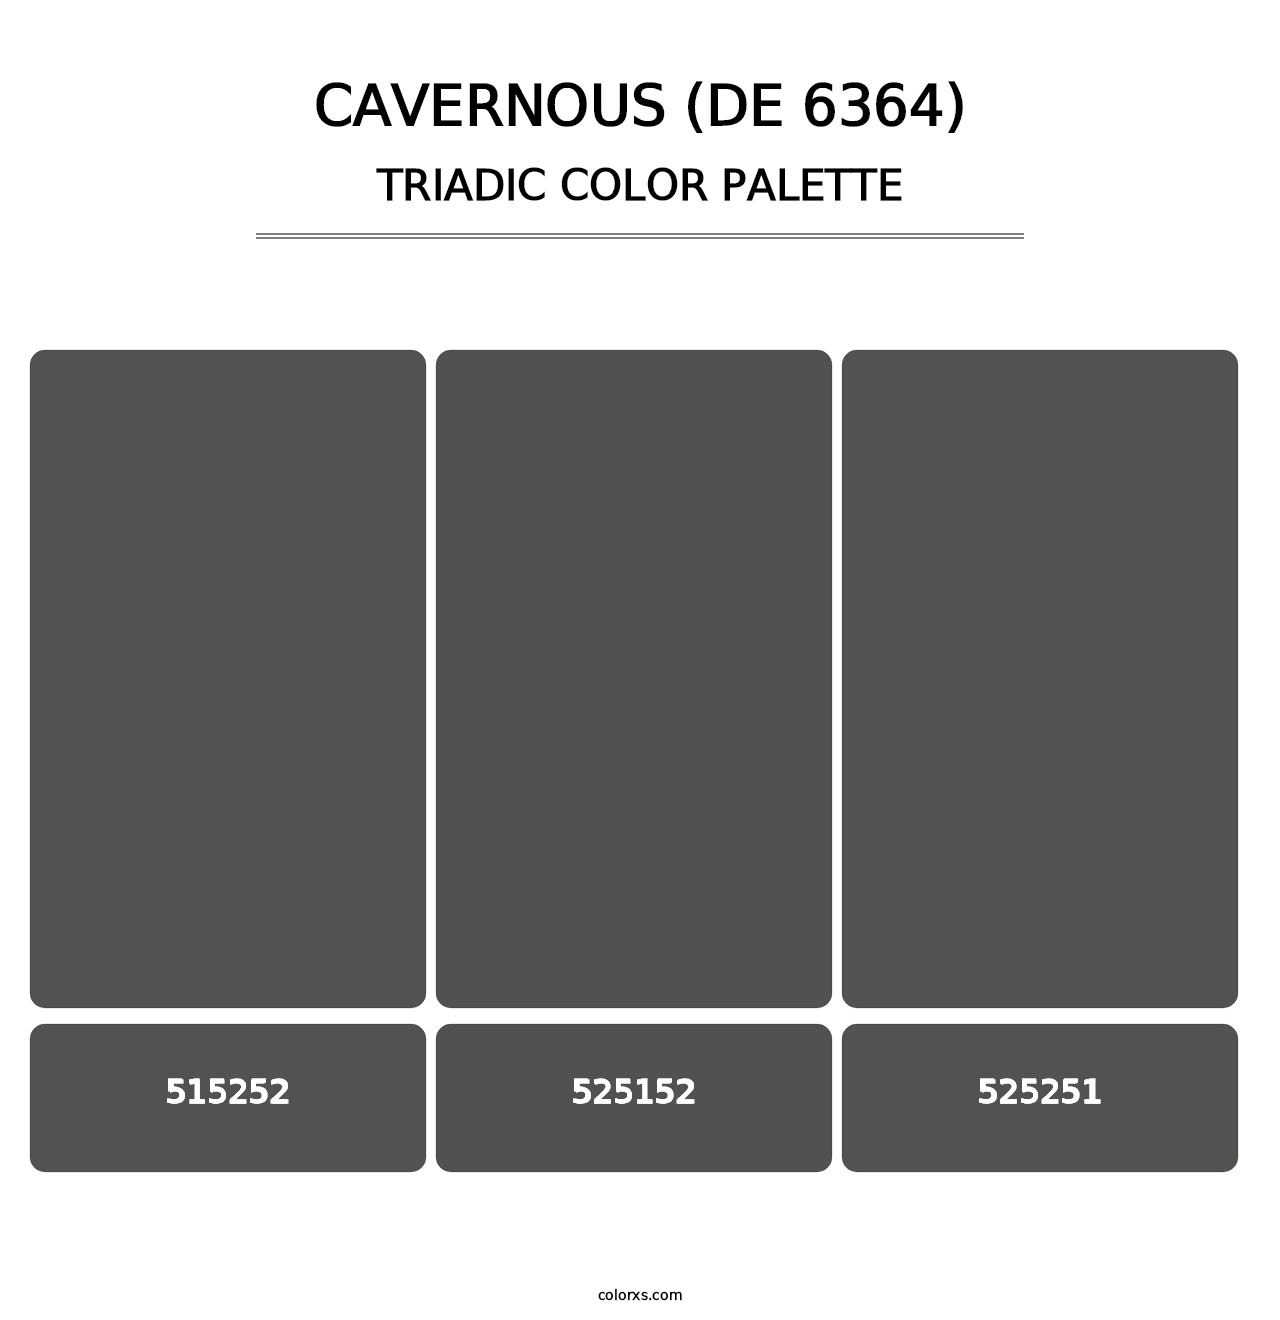 Cavernous (DE 6364) - Triadic Color Palette